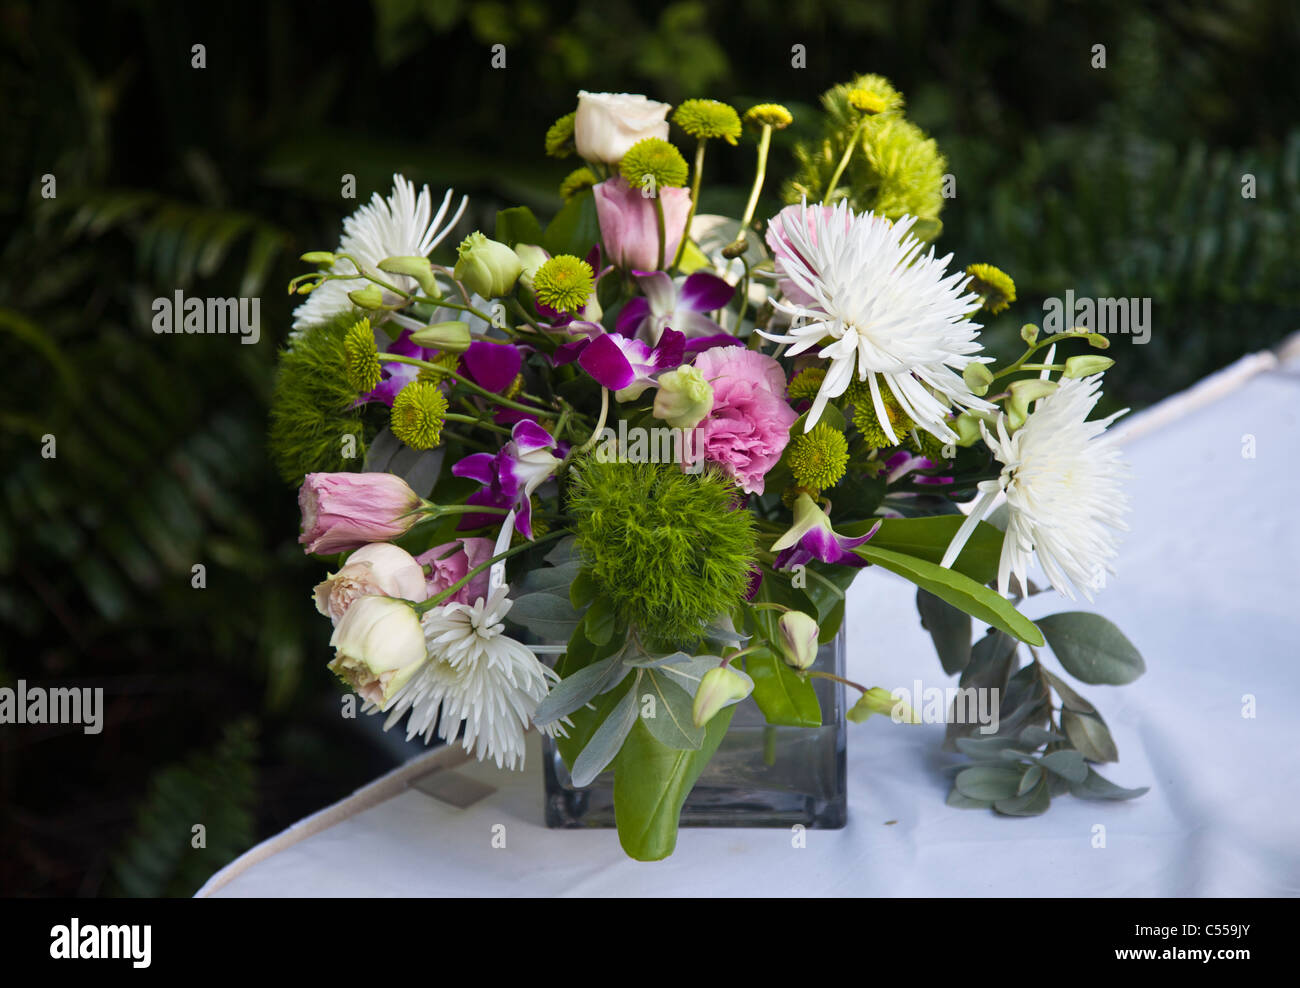 Arrangement de fleurs sur la table Banque D'Images